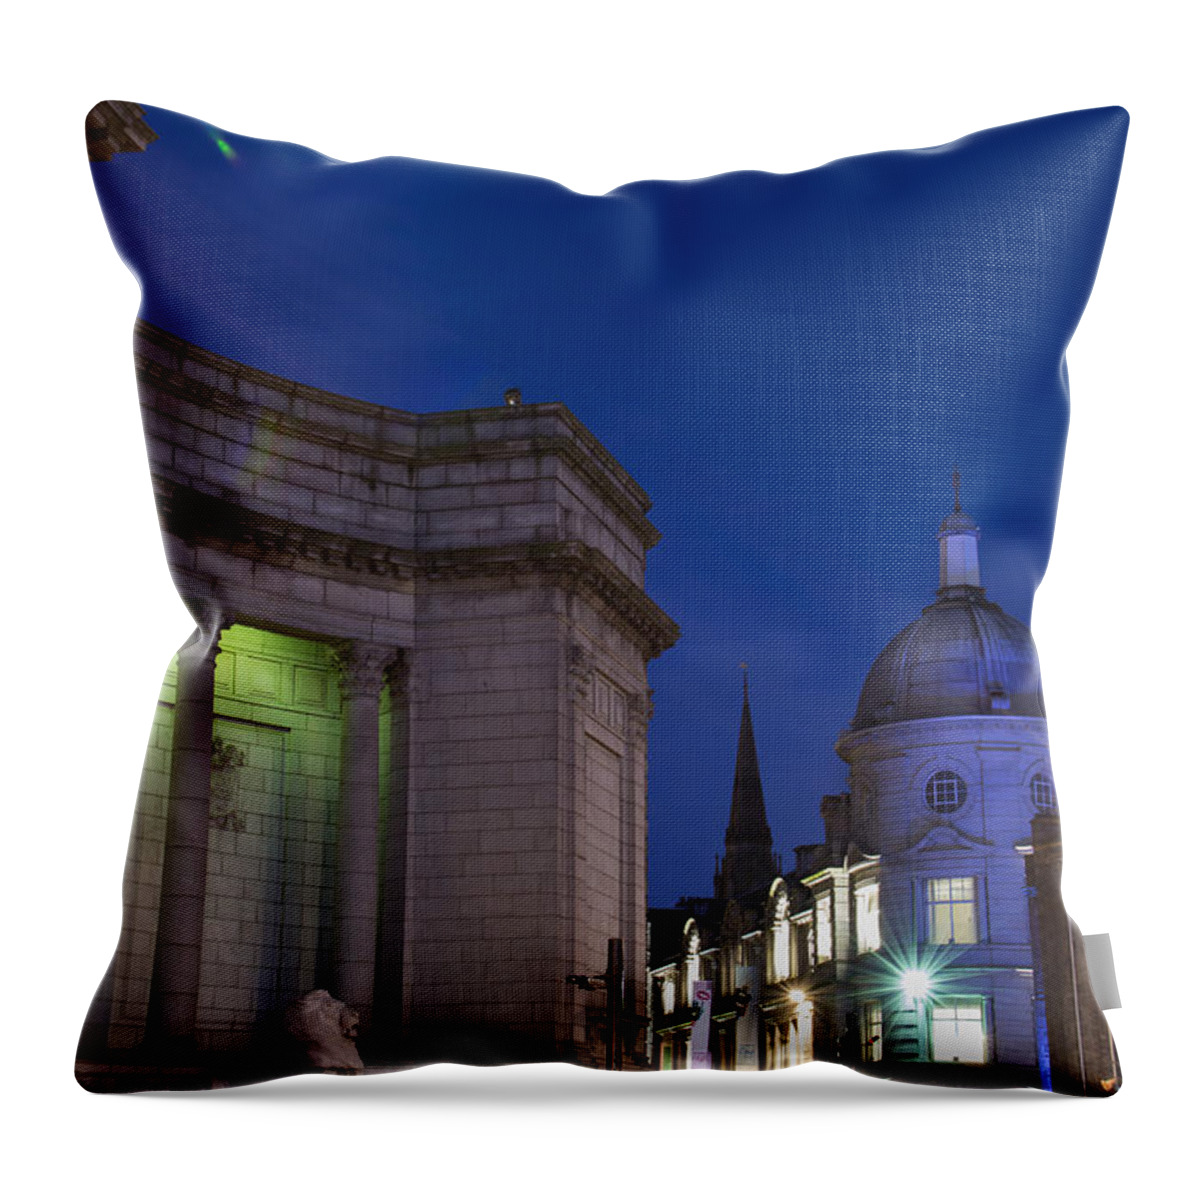 Aberdeen Art Gallery Throw Pillow featuring the photograph Aberdeen Art Gallery by Veli Bariskan